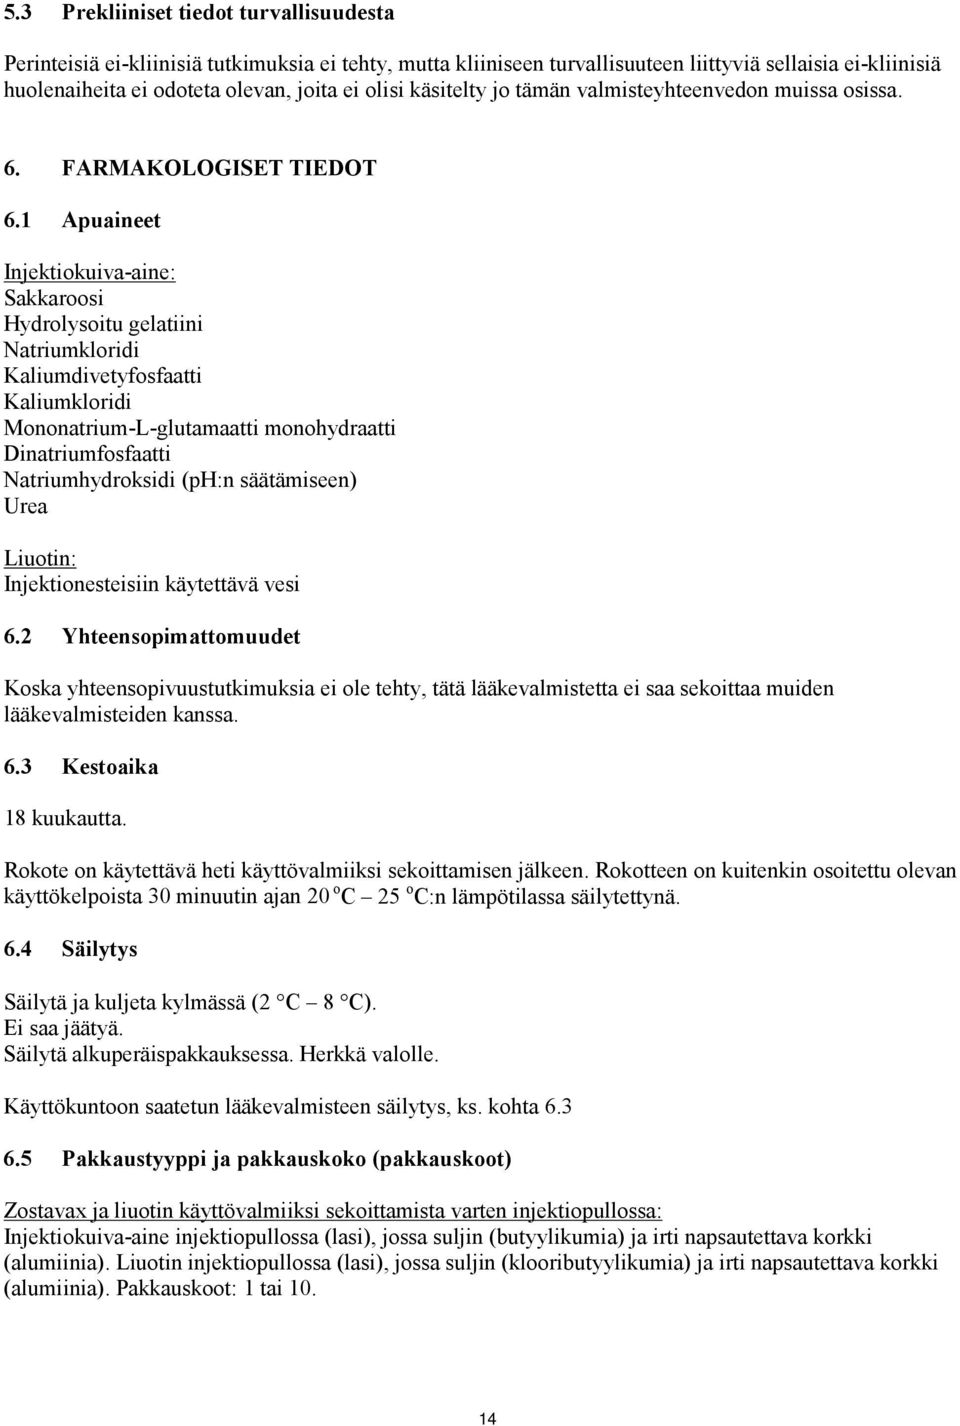 1 Apuaineet Injektiokuiva-aine: Sakkaroosi Hydrolysoitu gelatiini Natriumkloridi Kaliumdivetyfosfaatti Kaliumkloridi Mononatrium-L-glutamaatti monohydraatti Dinatriumfosfaatti Natriumhydroksidi (ph:n